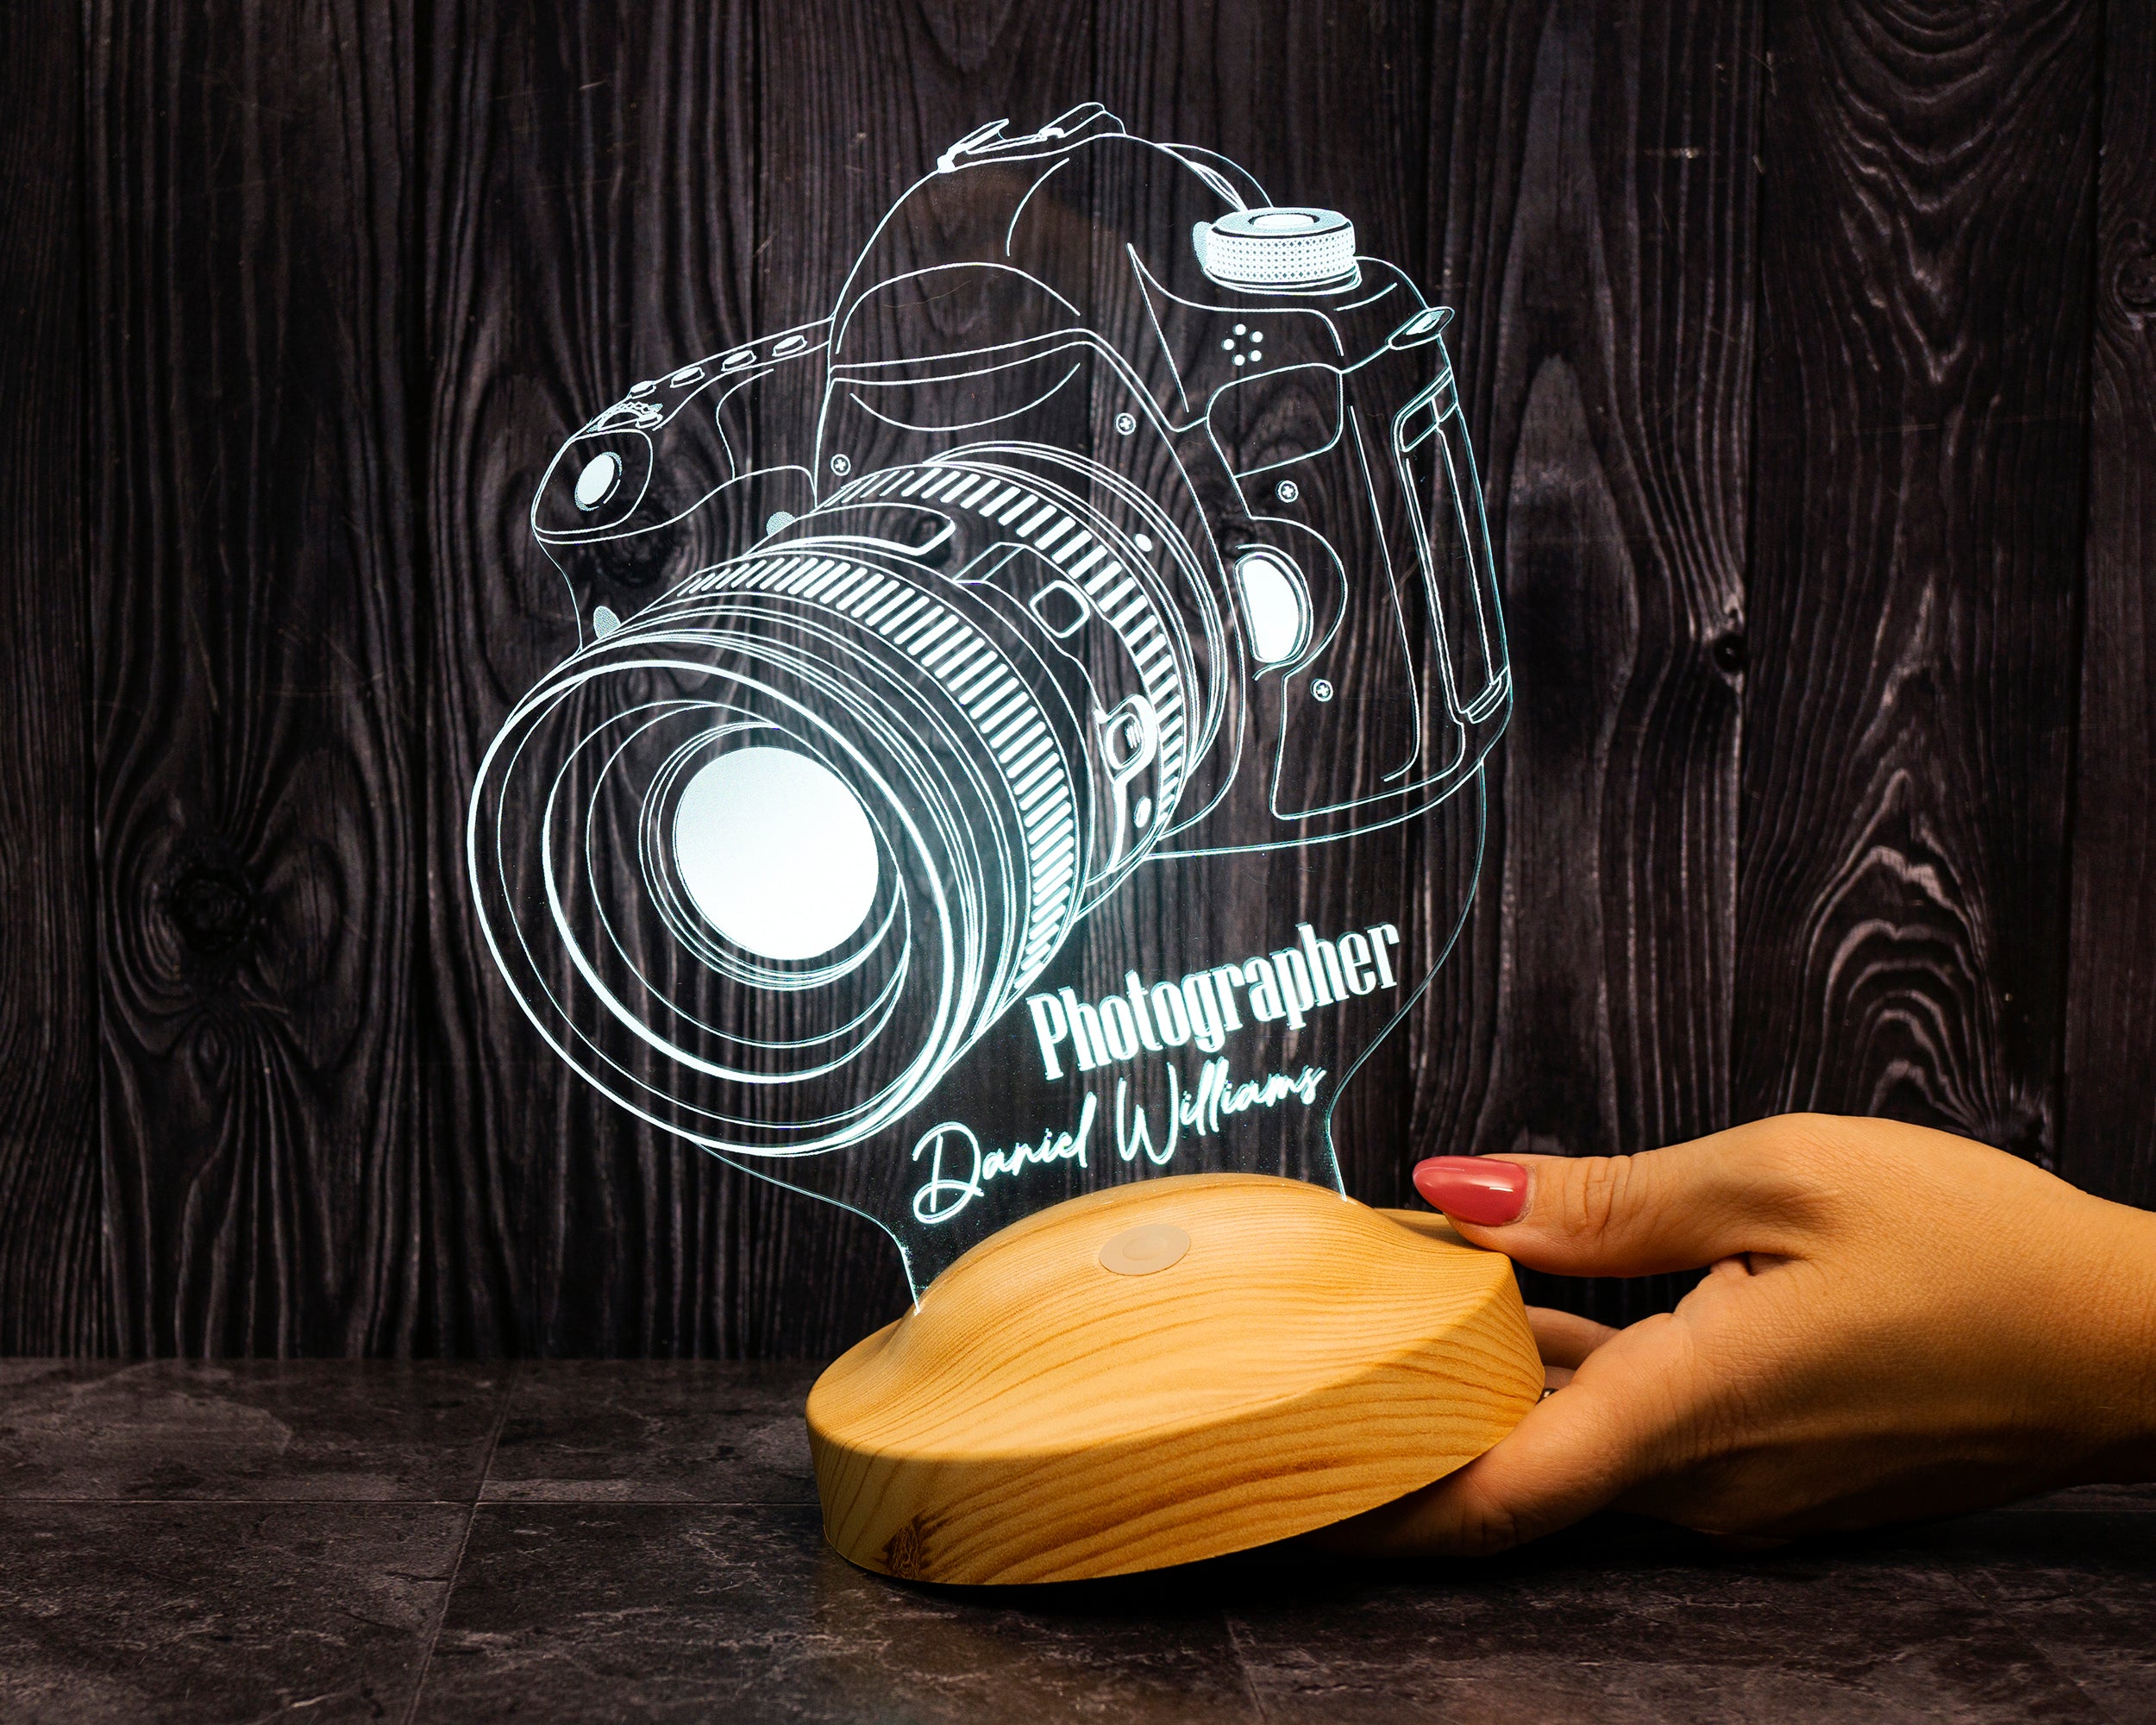 Fotokamera LED Lampe als Geschenk für Fotografen 3D Illusionslampe